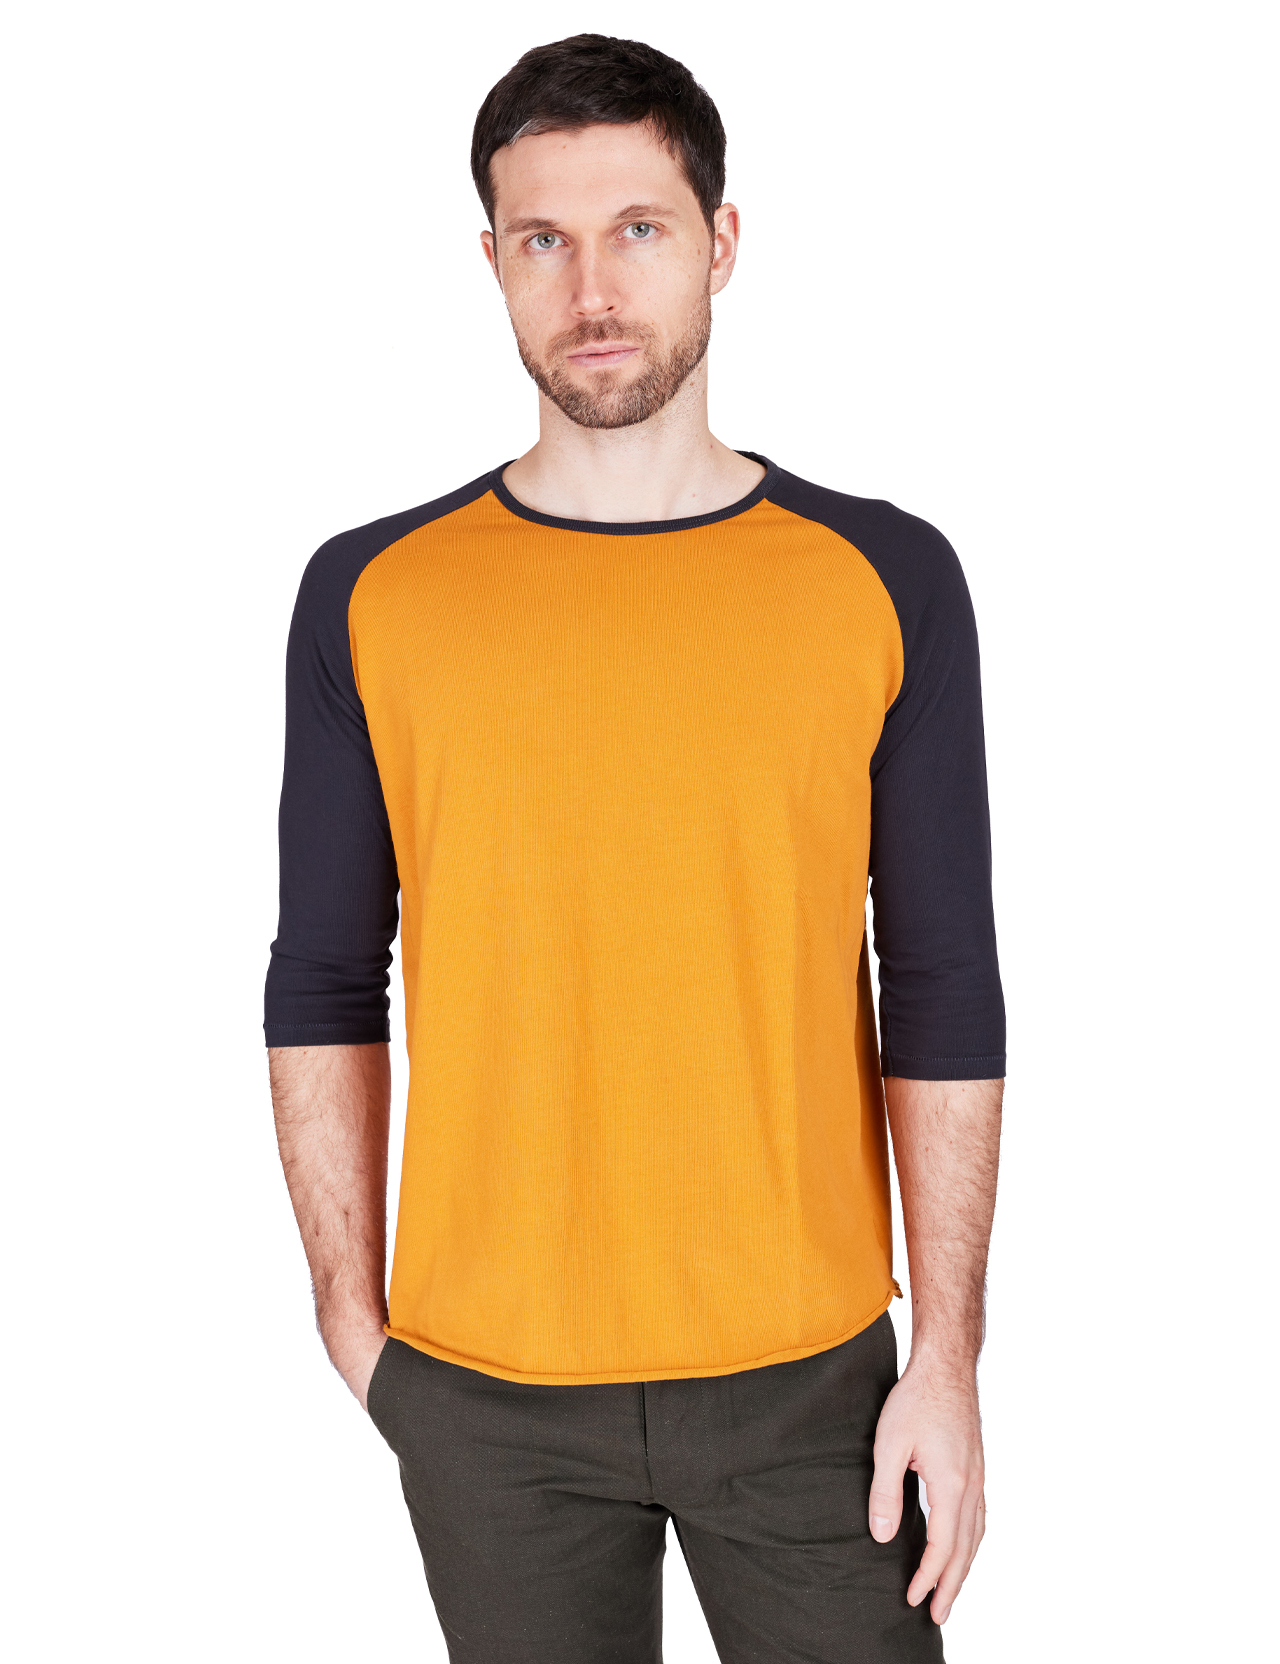 Indigofera - Leon Raglan 3/4 T-shirt - Orange/Marshall Black